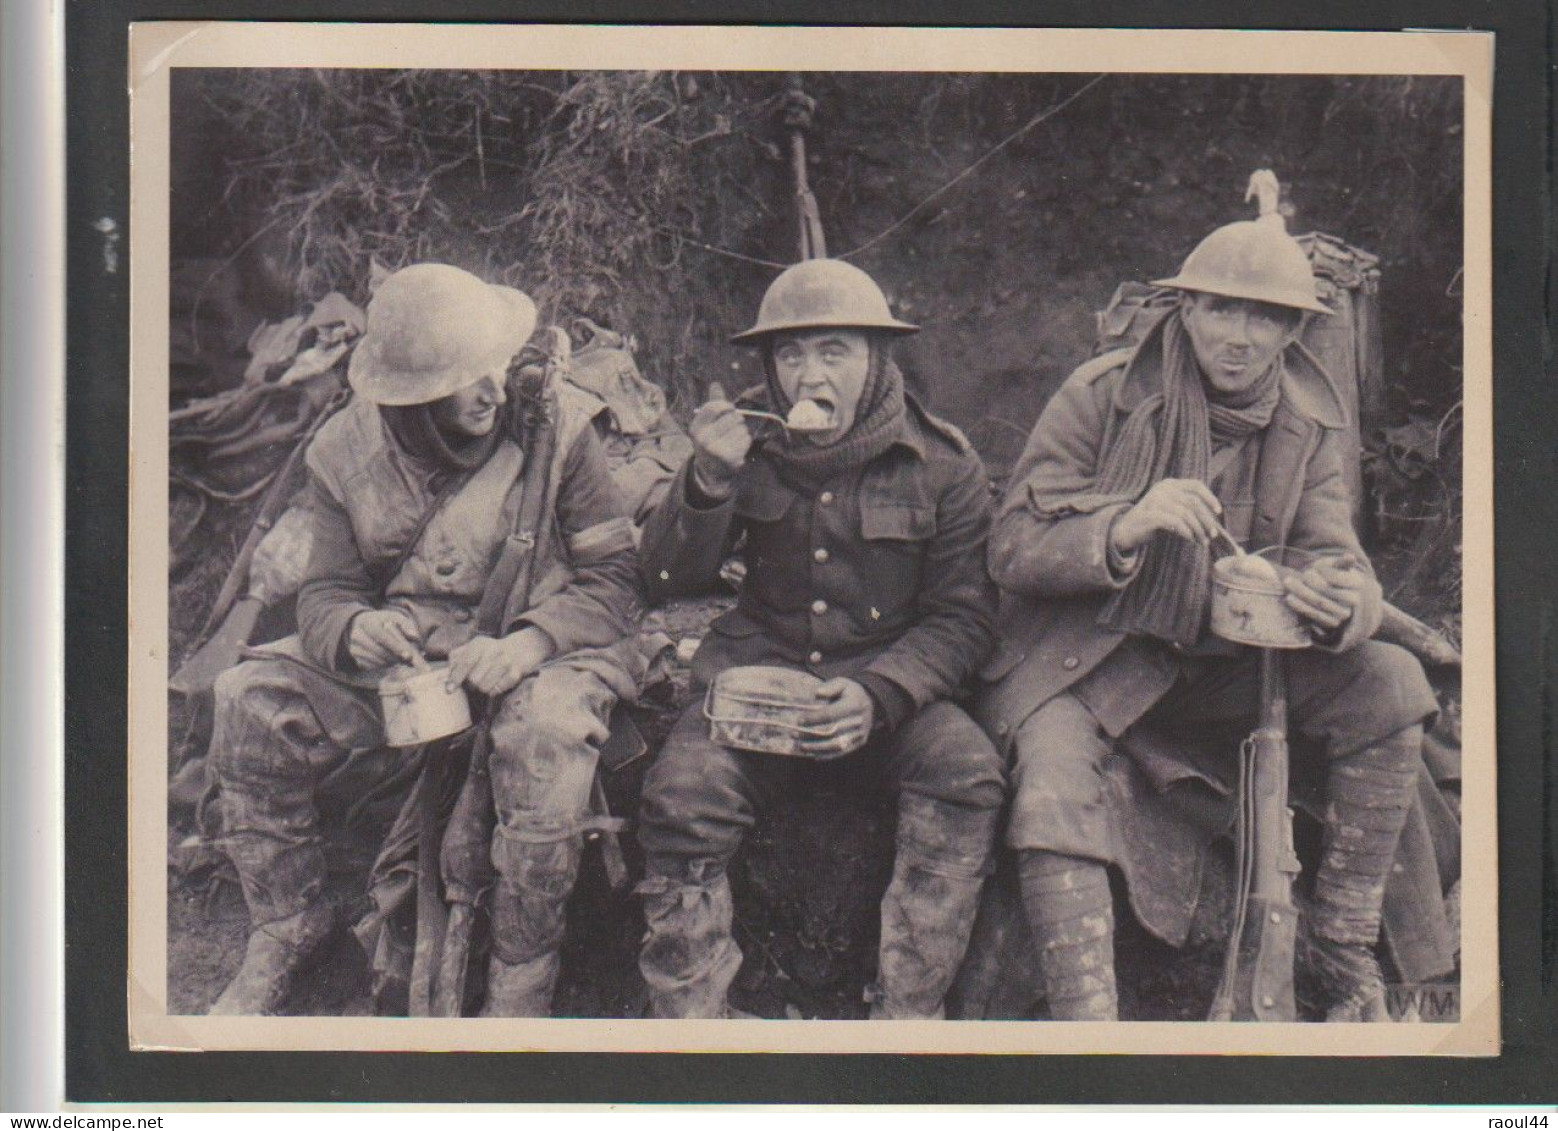 Mobilisation de l'armée autrichienne, 1914. Médaille Goetz + photos